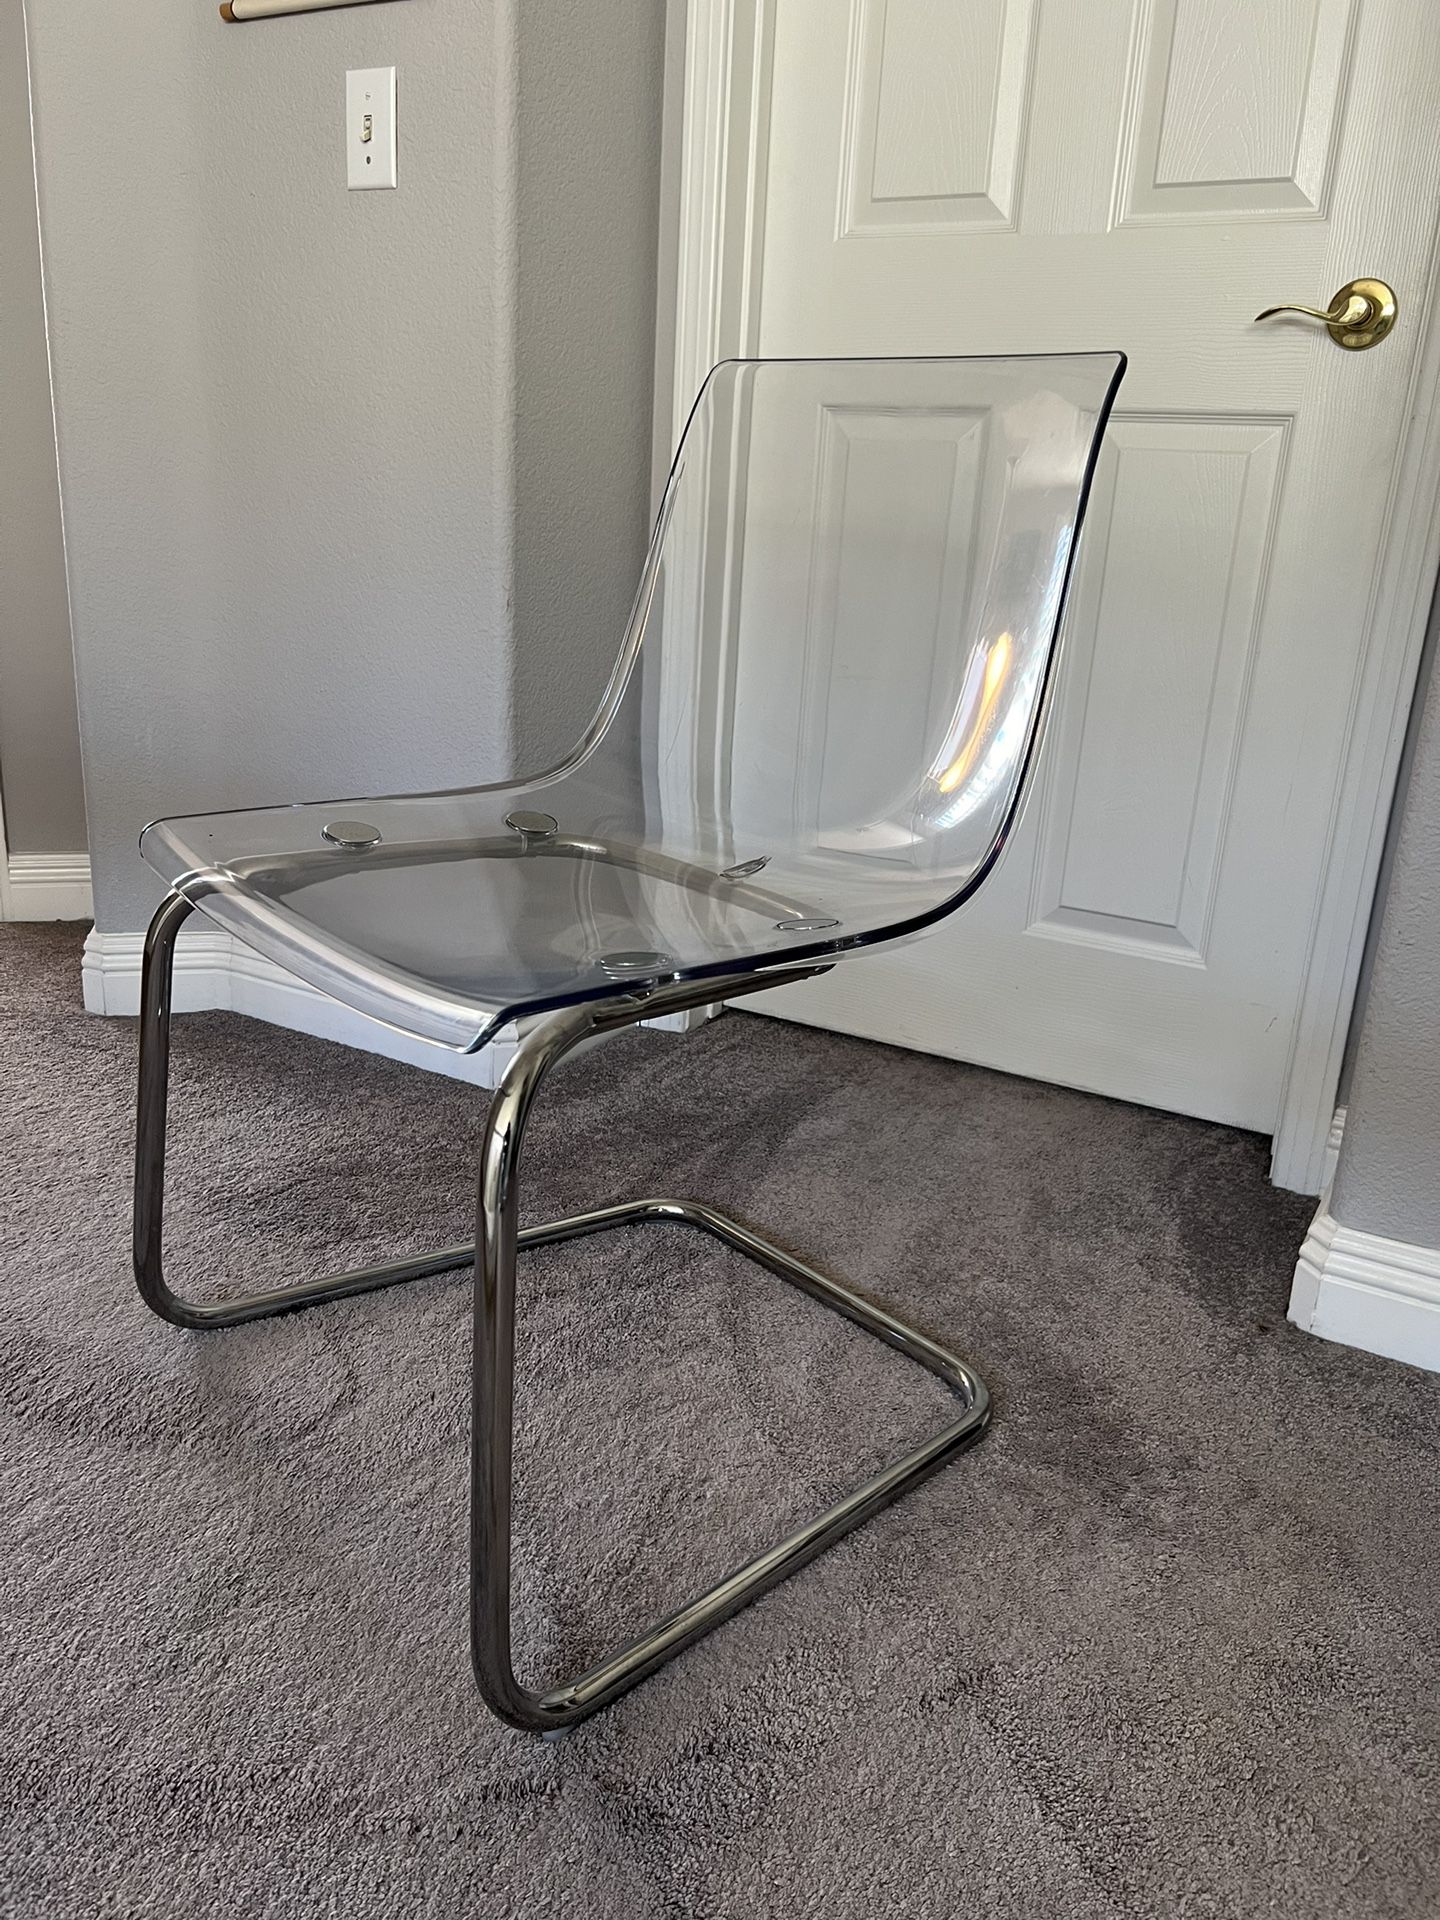 IKEA Clear Acrylic Chair